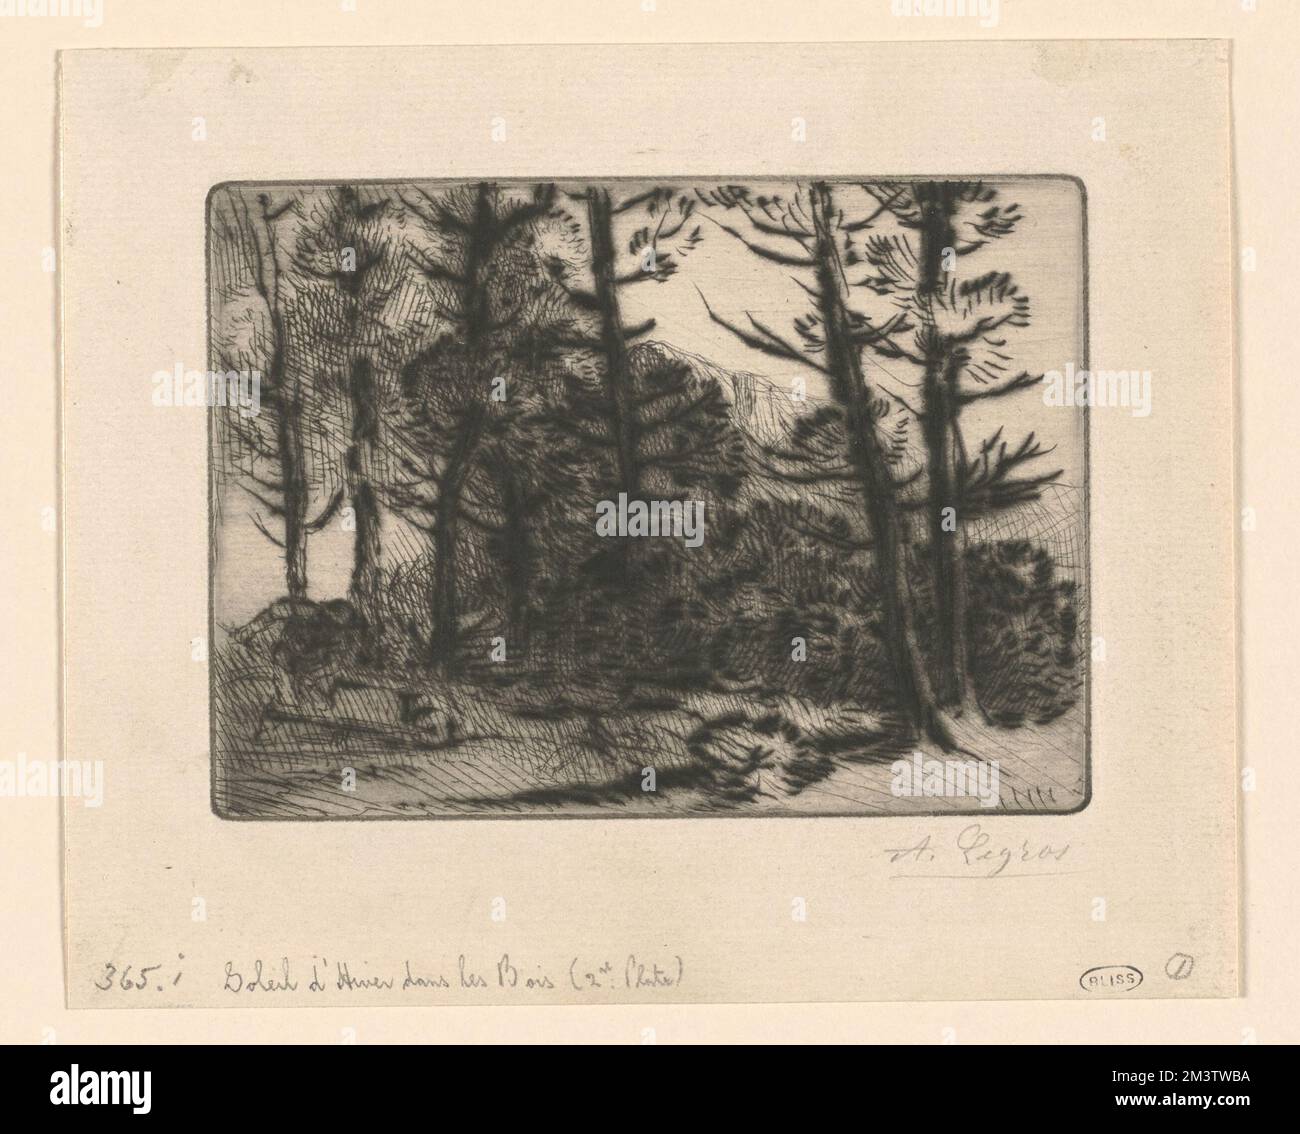 Soleil d'hiver dans les bois (2nd plate) , Forests, Alphonse Legros (1837-1911) Stock Photo